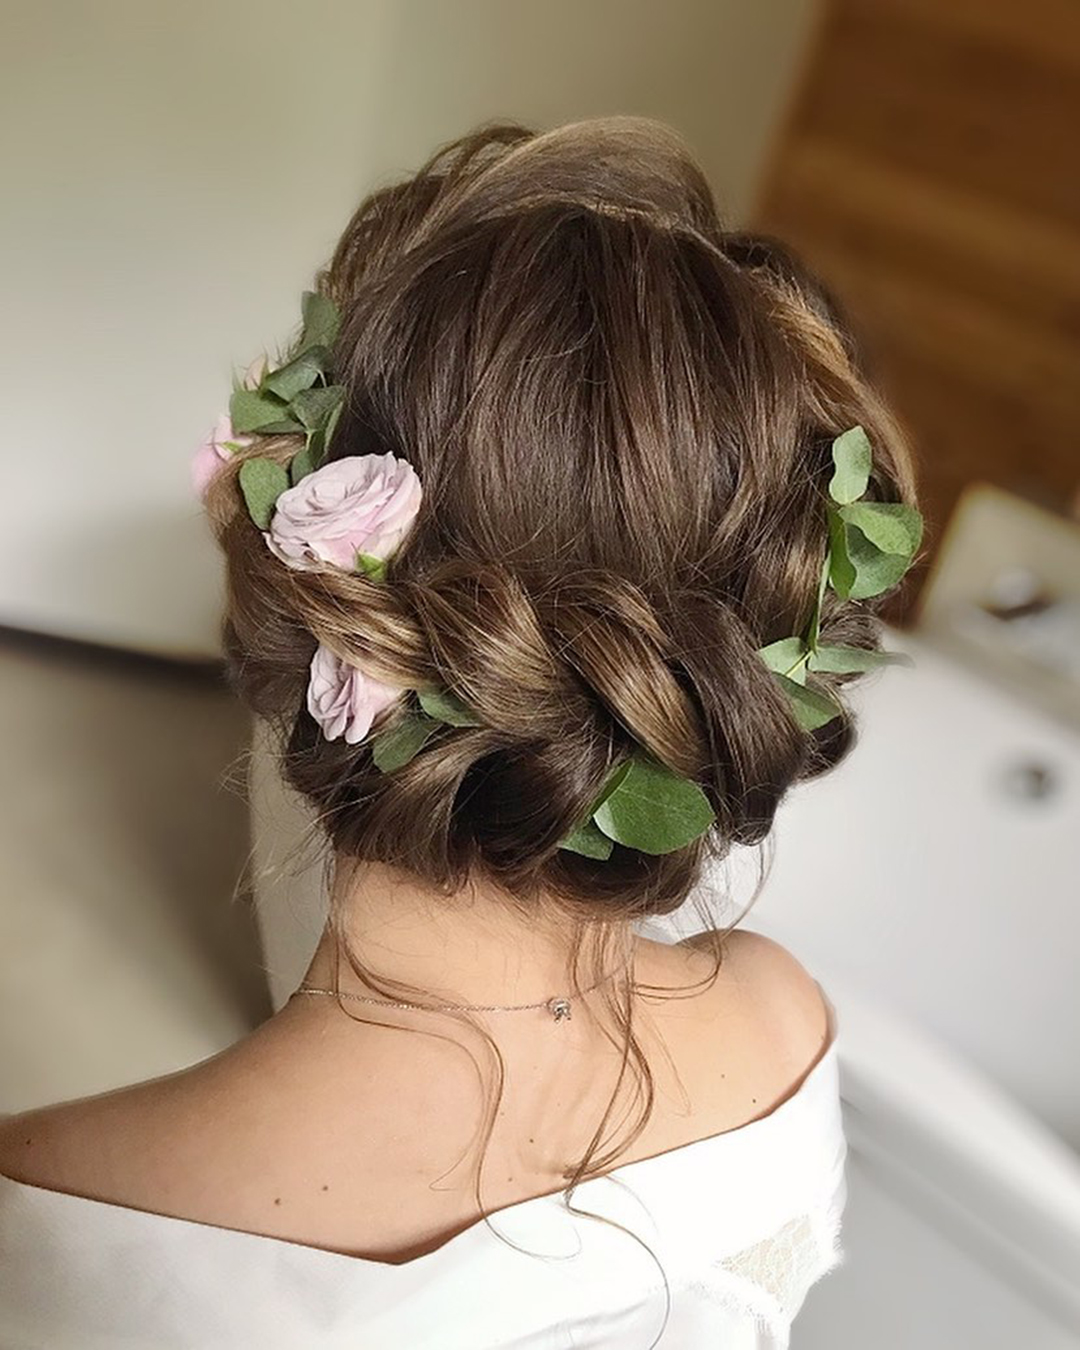 wedding hairstyles braided crown with flowers julia_alesionok